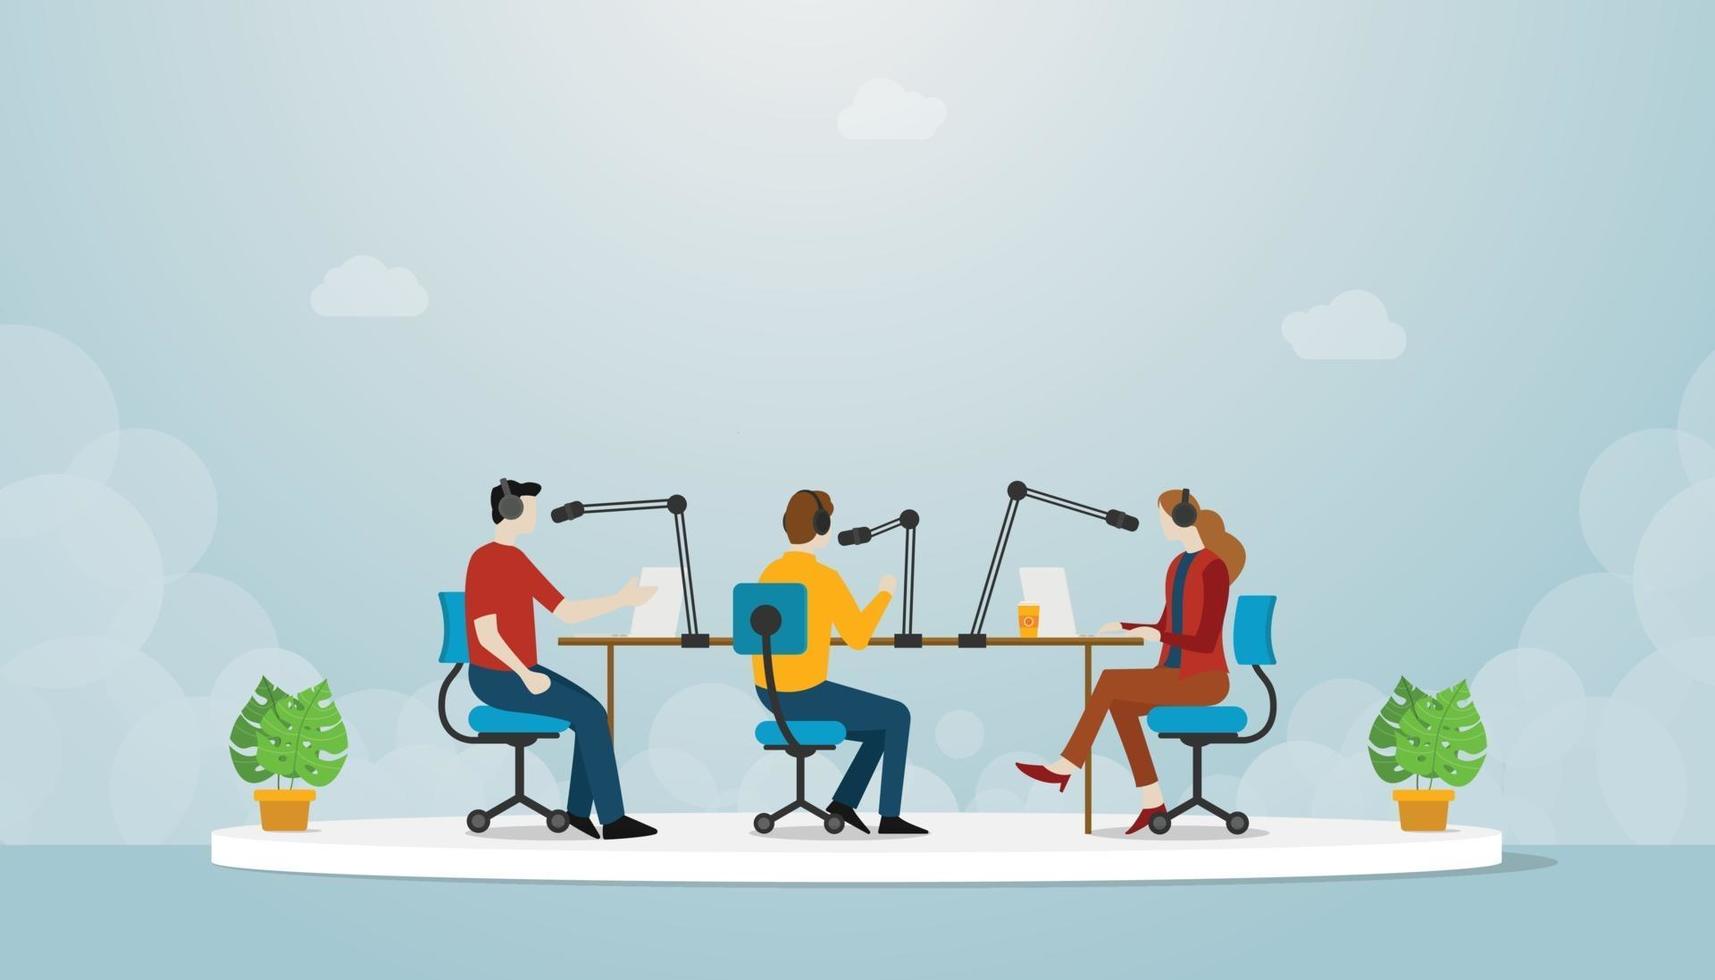 Podcast-Teamproduktion mit Menschen, Mann und Frau sitzen und diskutieren vektor